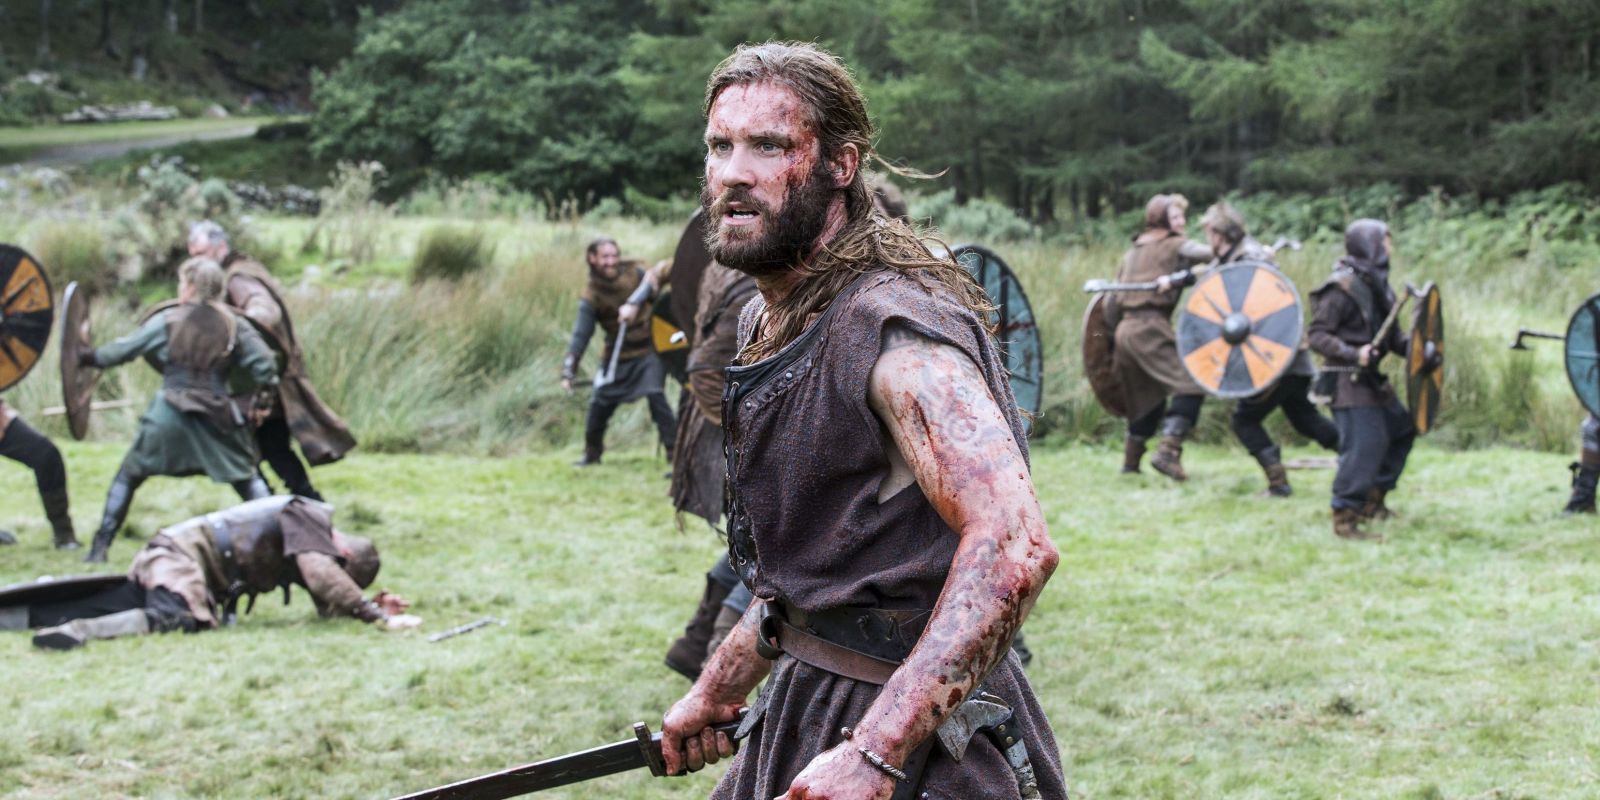 O actor português Ivo Alexandre, participa nos últimos episódios de Vikings